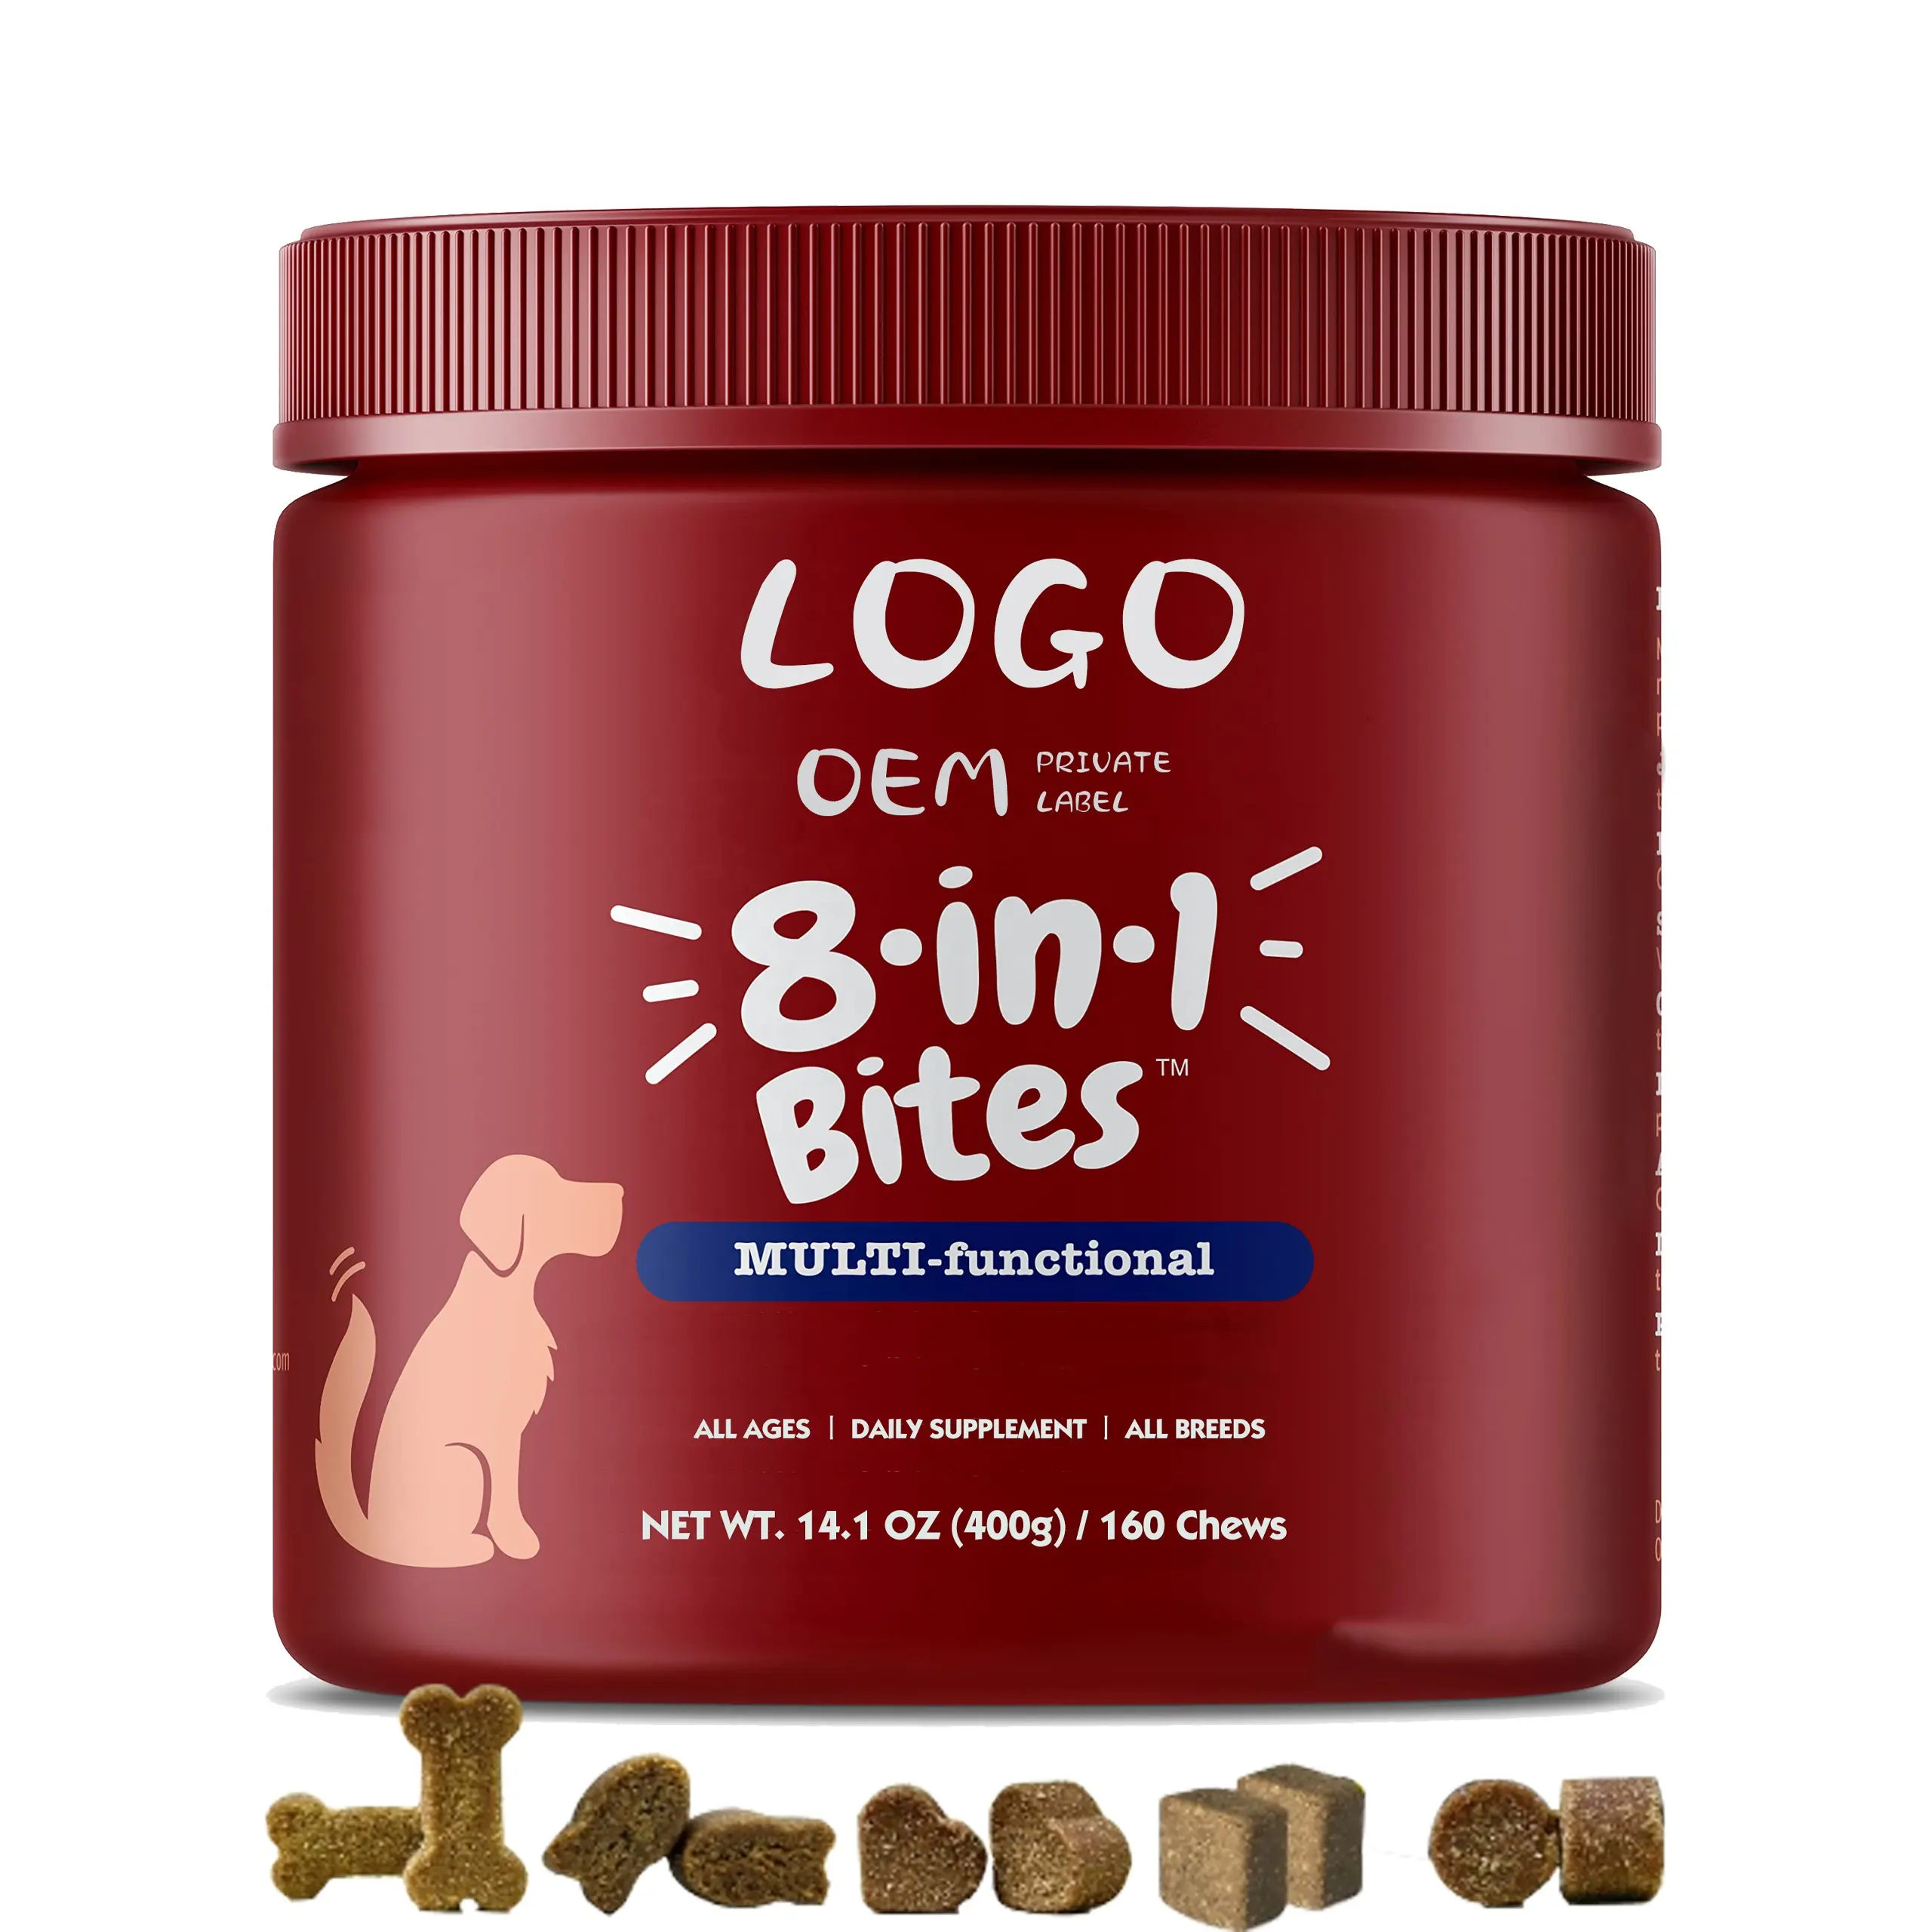 Fabricant OEM Supplément vitamine calcium lécithine pour chien Supplément pour hanche et articulation Traitement contre les puces Soins de santé et suppléments pour animaux de compagnie